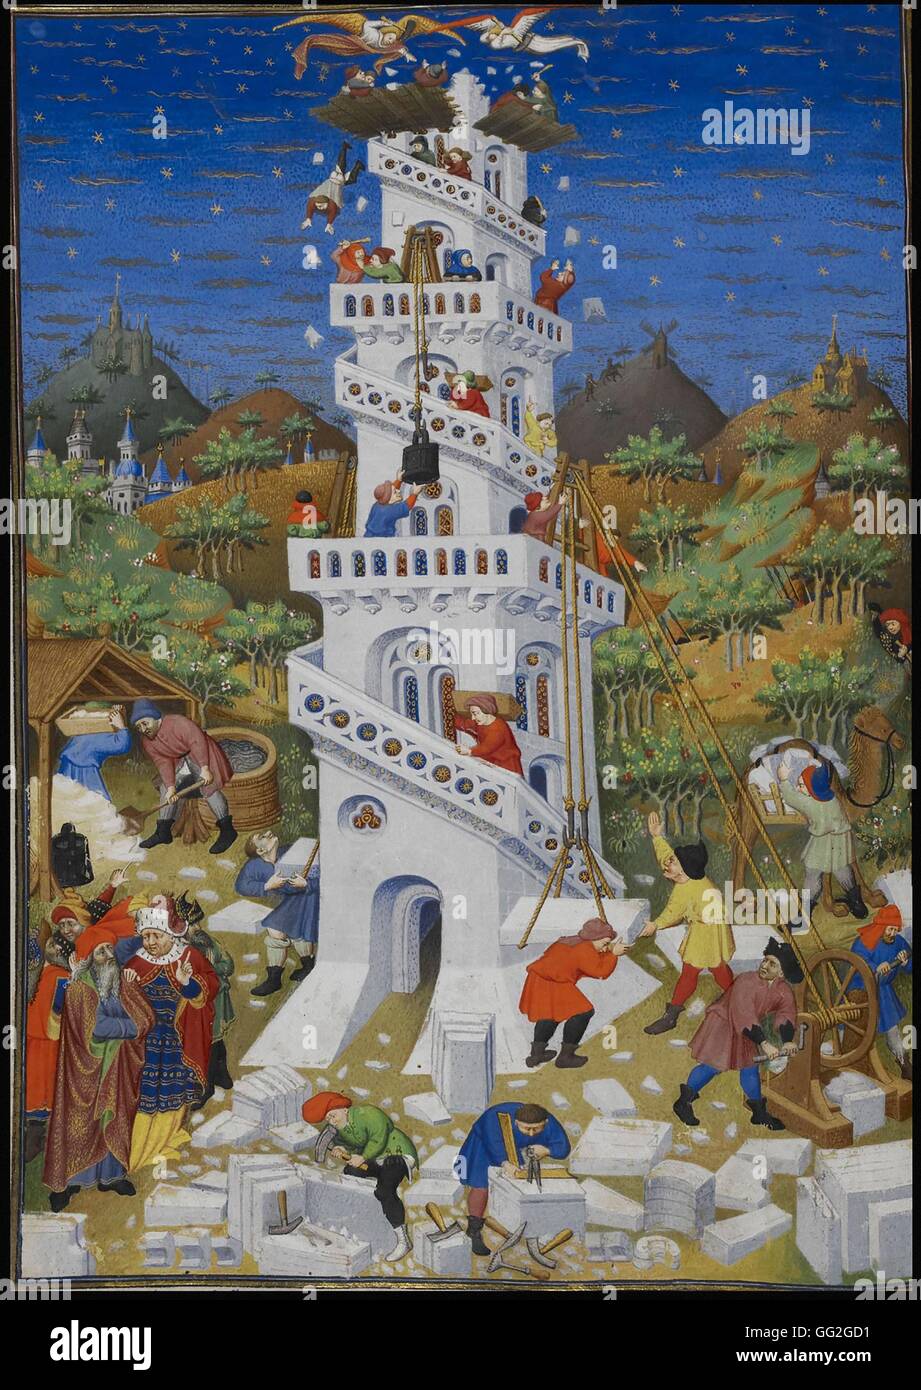 Das Gebäude und die Zerstörung des Turms von Babel beleuchtet Pergament aus dem Stundenbuch des Herzog von Bedford. MS 18850, f. 17 v. 1423 London, British Library Stockfoto